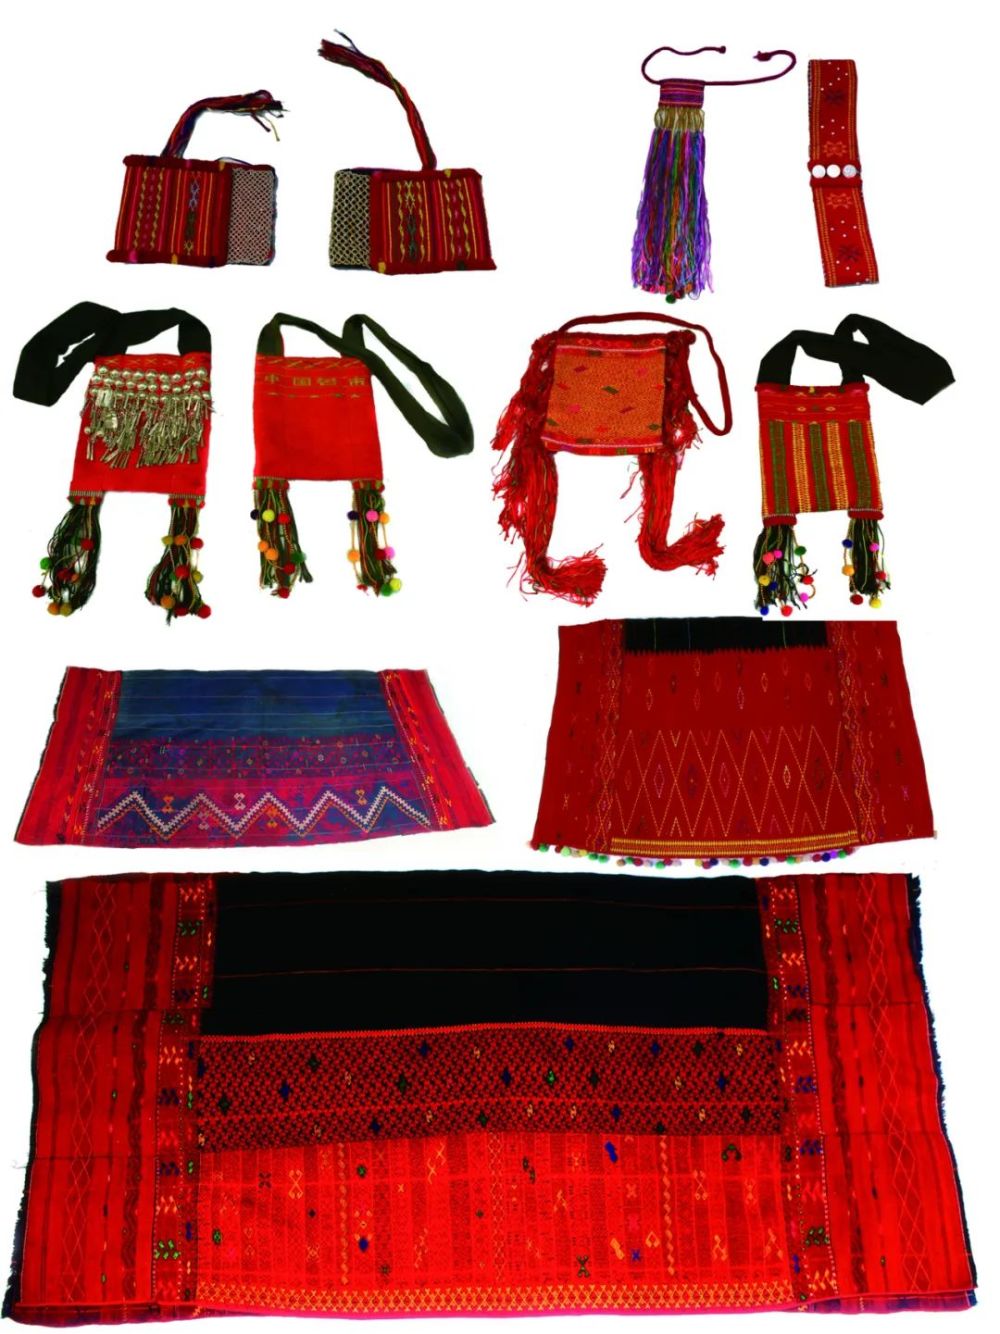 创造出这独具特色的织锦技艺,世代传承,成为景颇族服饰文化中绚丽夺目